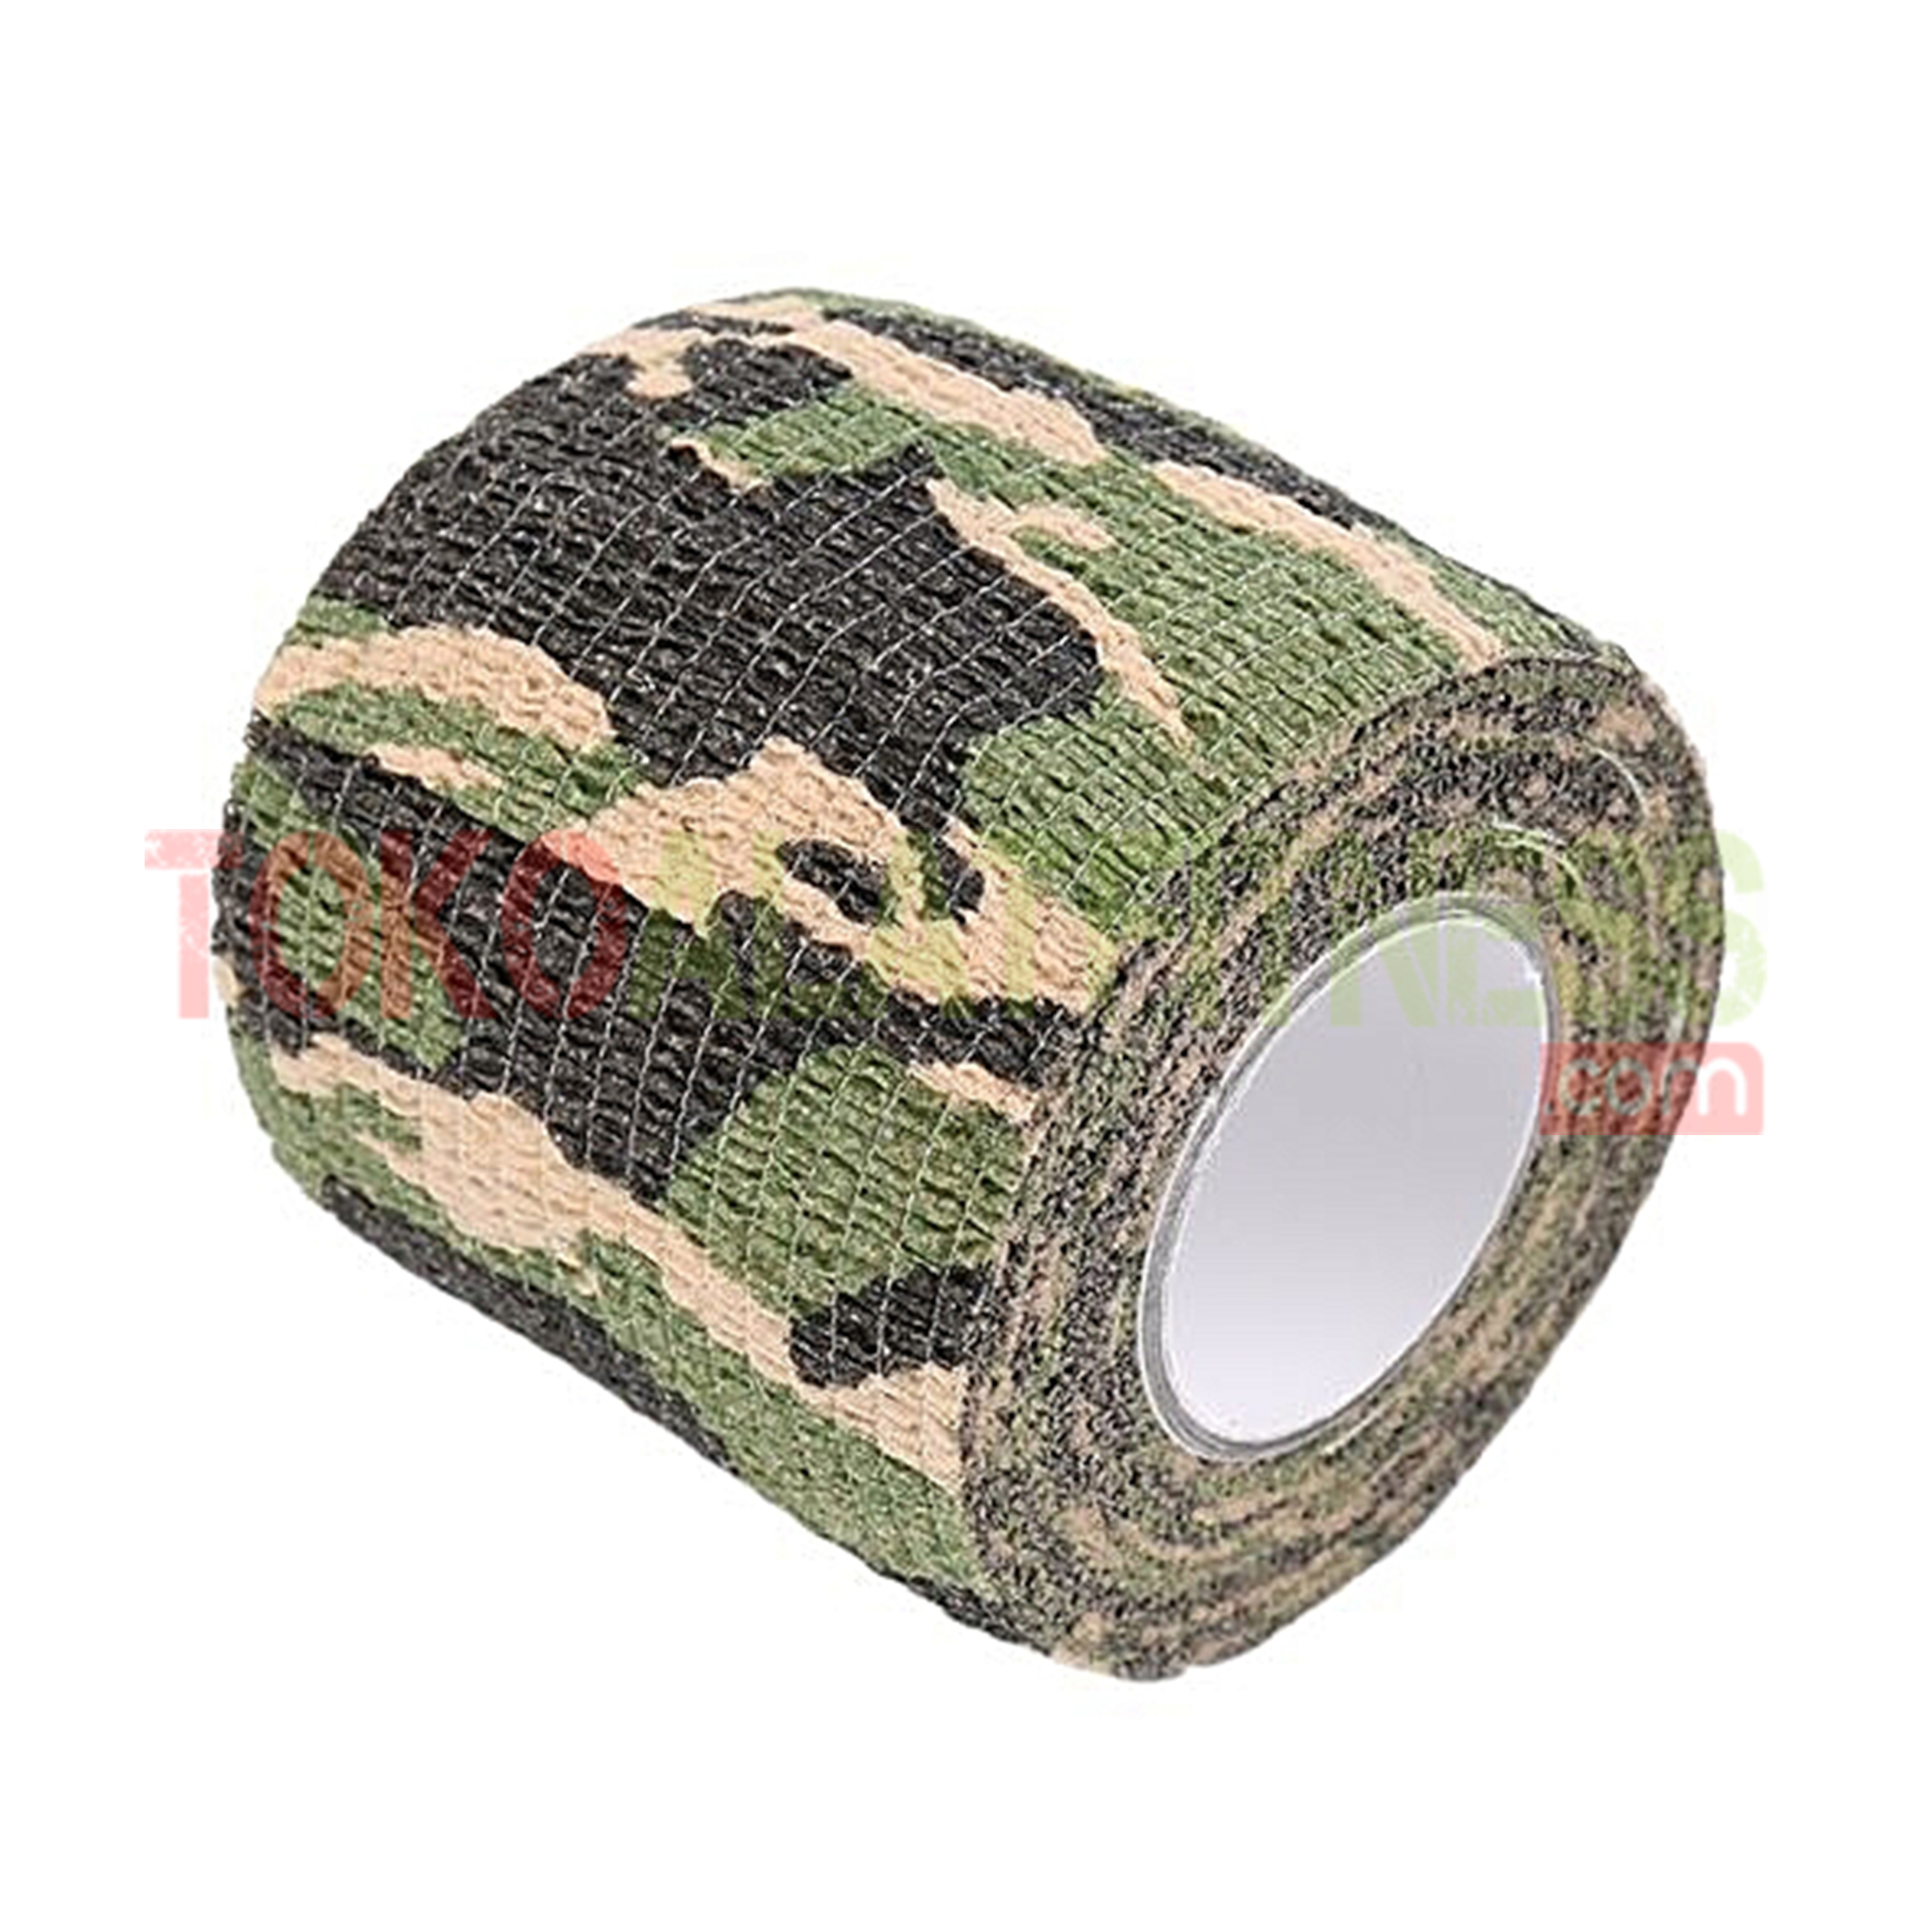 Camo Tape Army 1 wtm - Roll Cotton Elastic Tape Hijau Army Body Gym